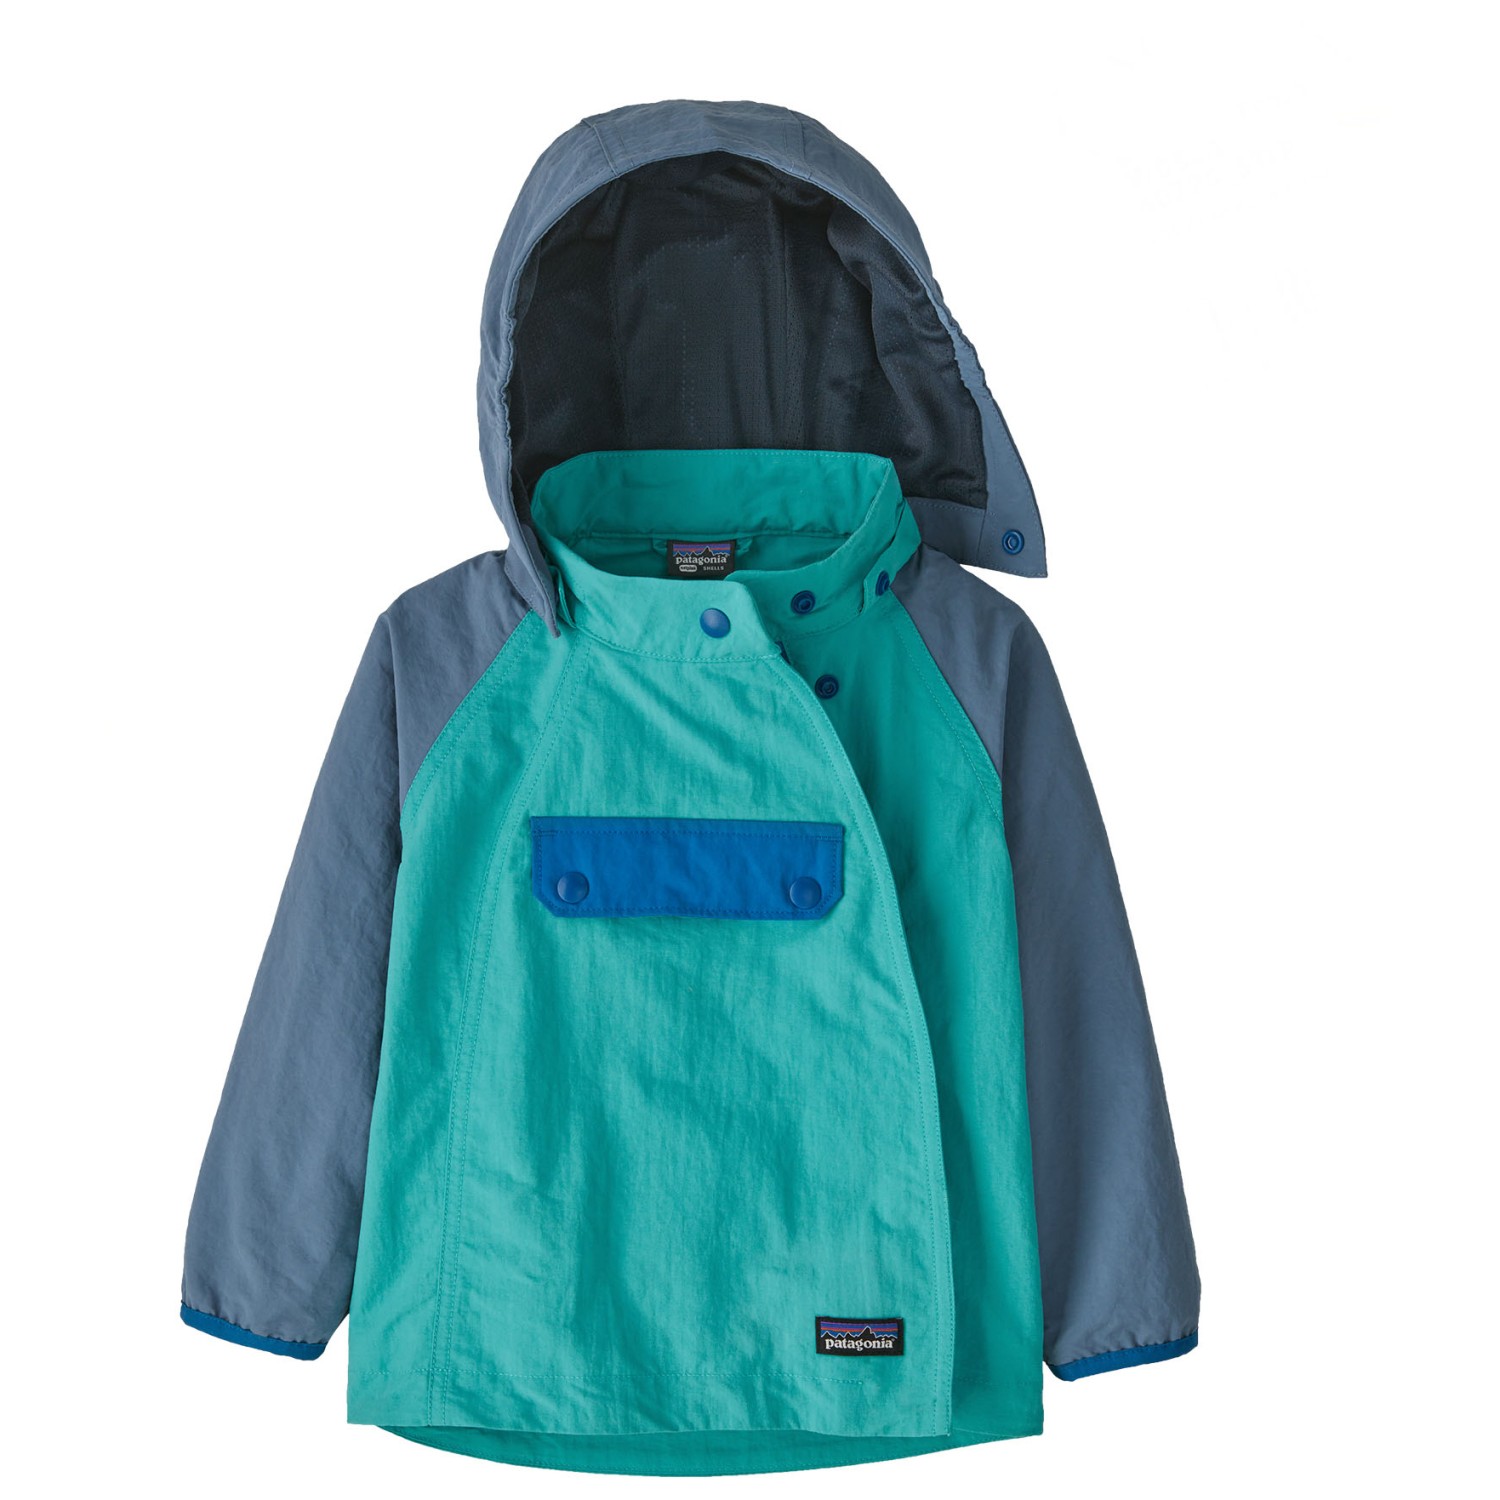 Повседневная куртка Patagonia Kid's Isthmus Anorak, цвет Subtidal Blue повседневная куртка patagonia kid s isthmus anorak цвет subtidal blue